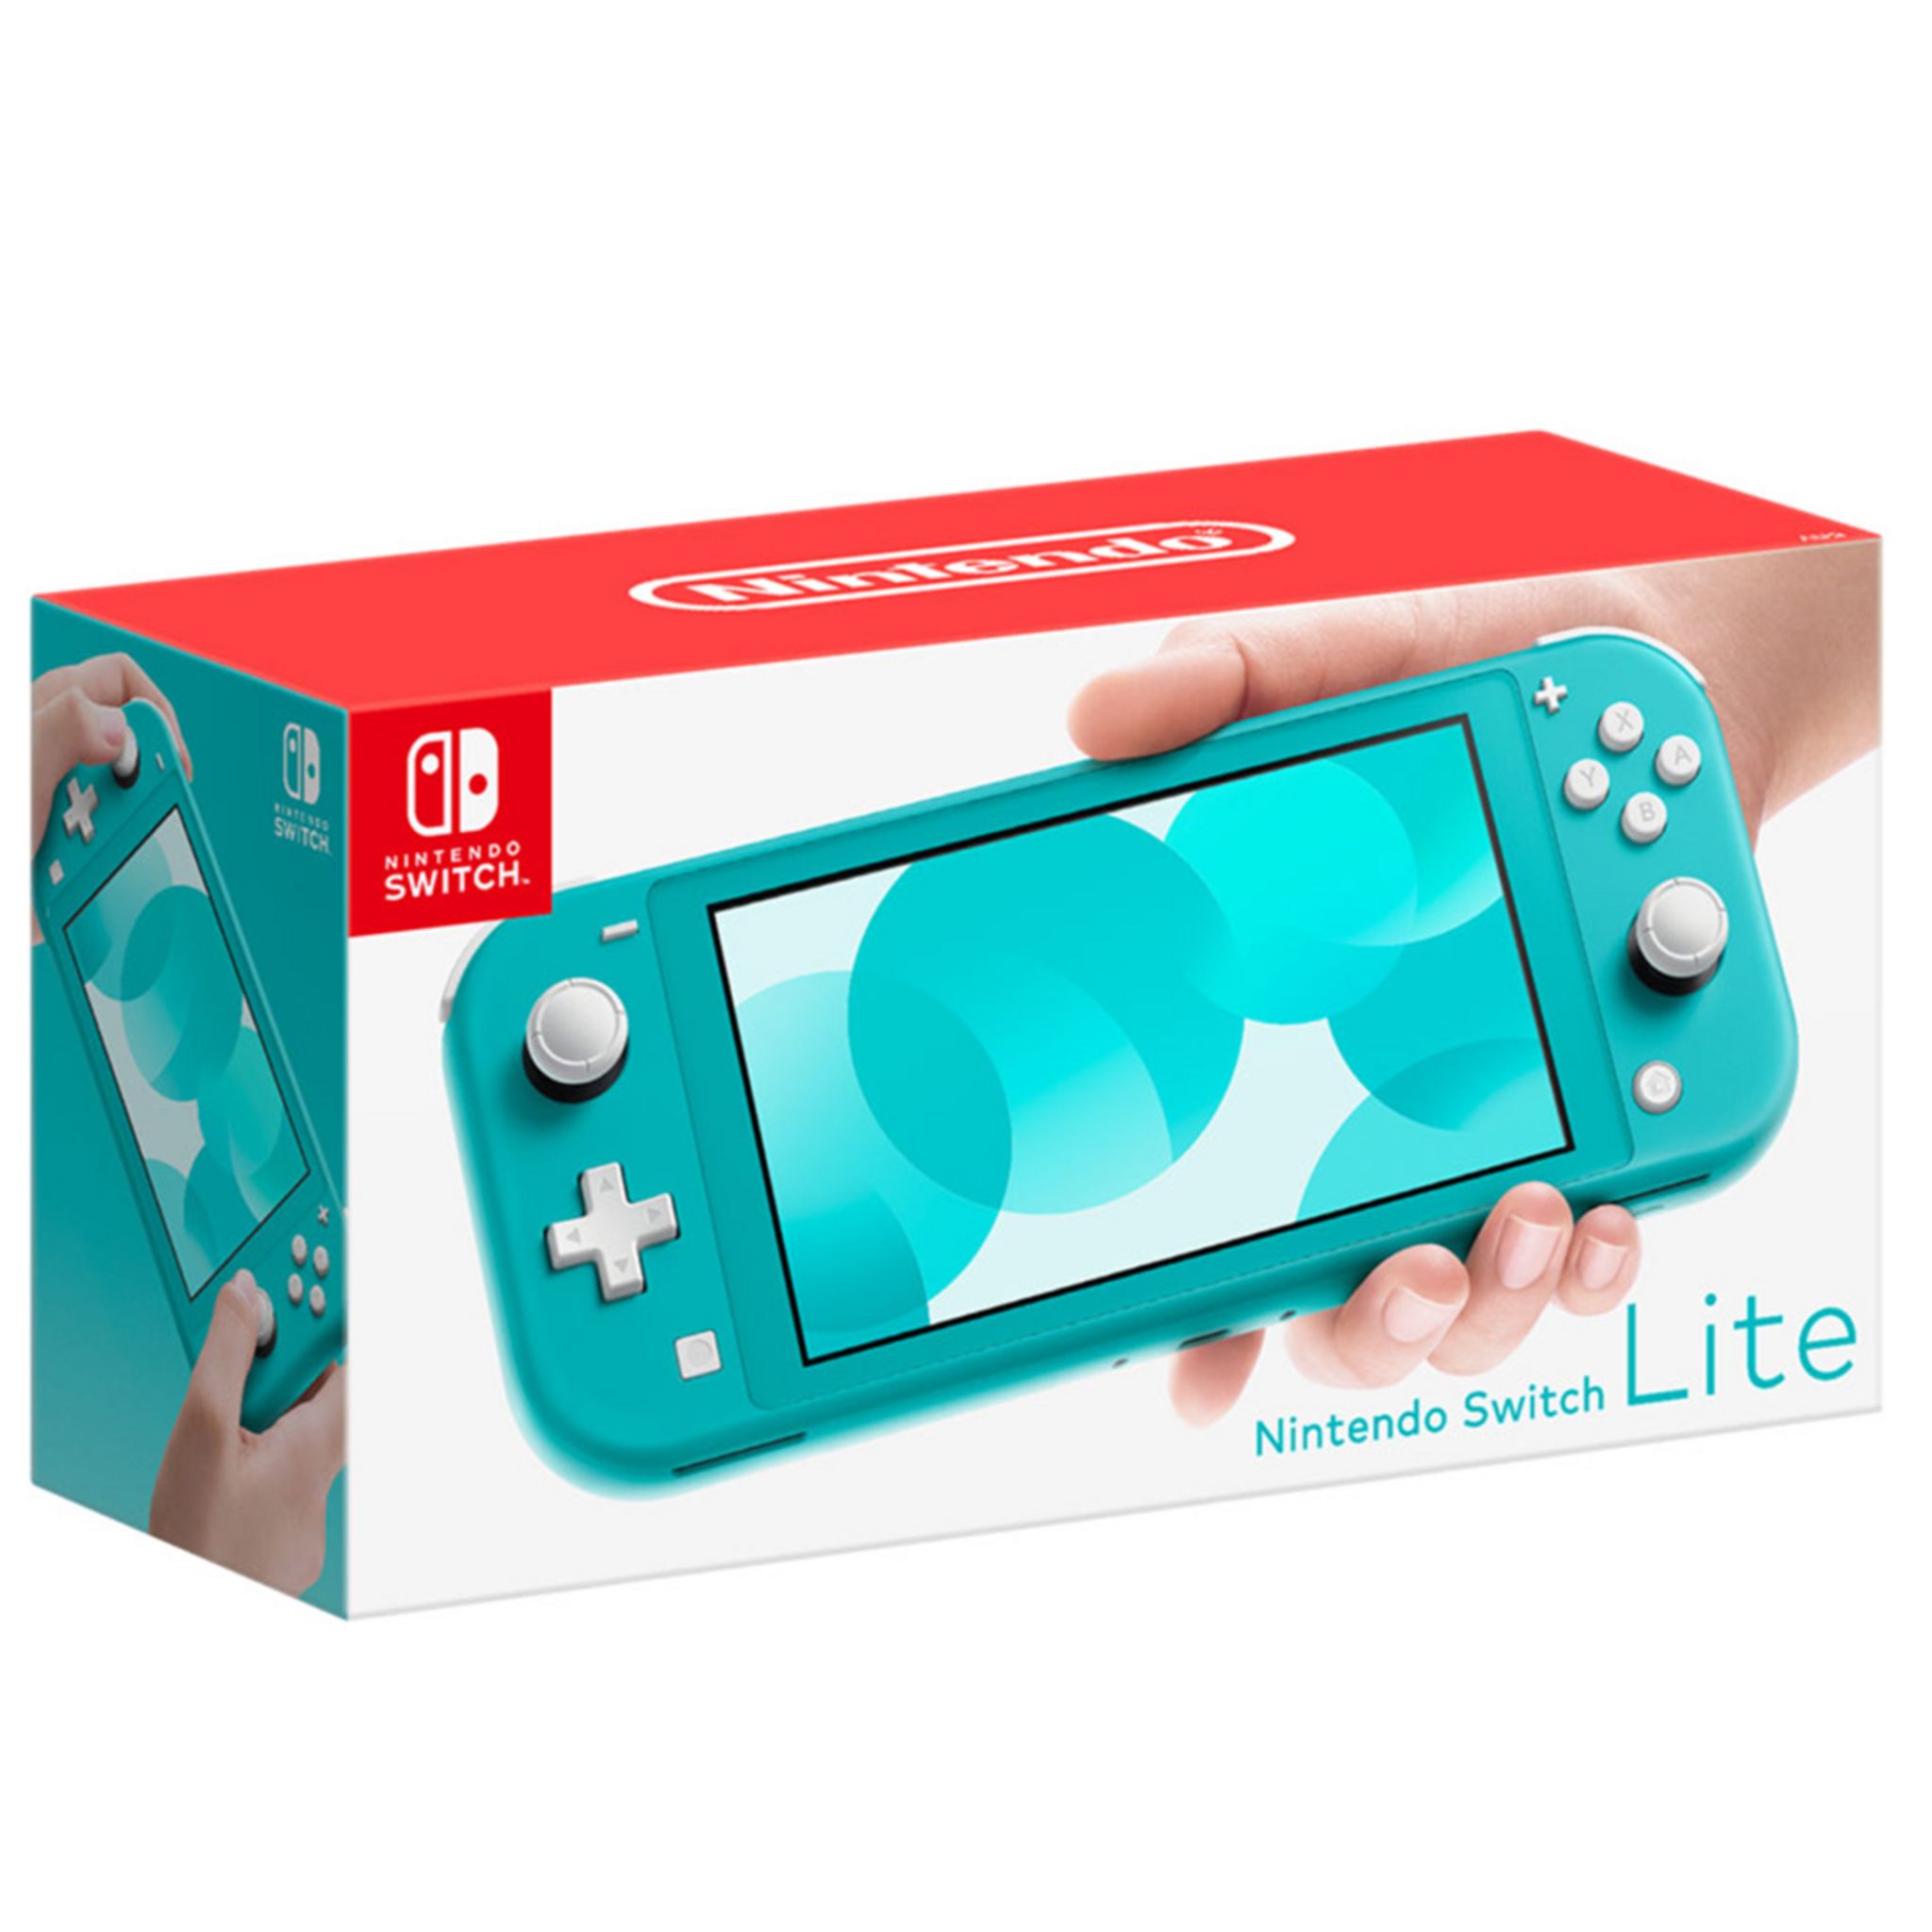 vend un accessoire Nintendo Switch officiel avec une promo